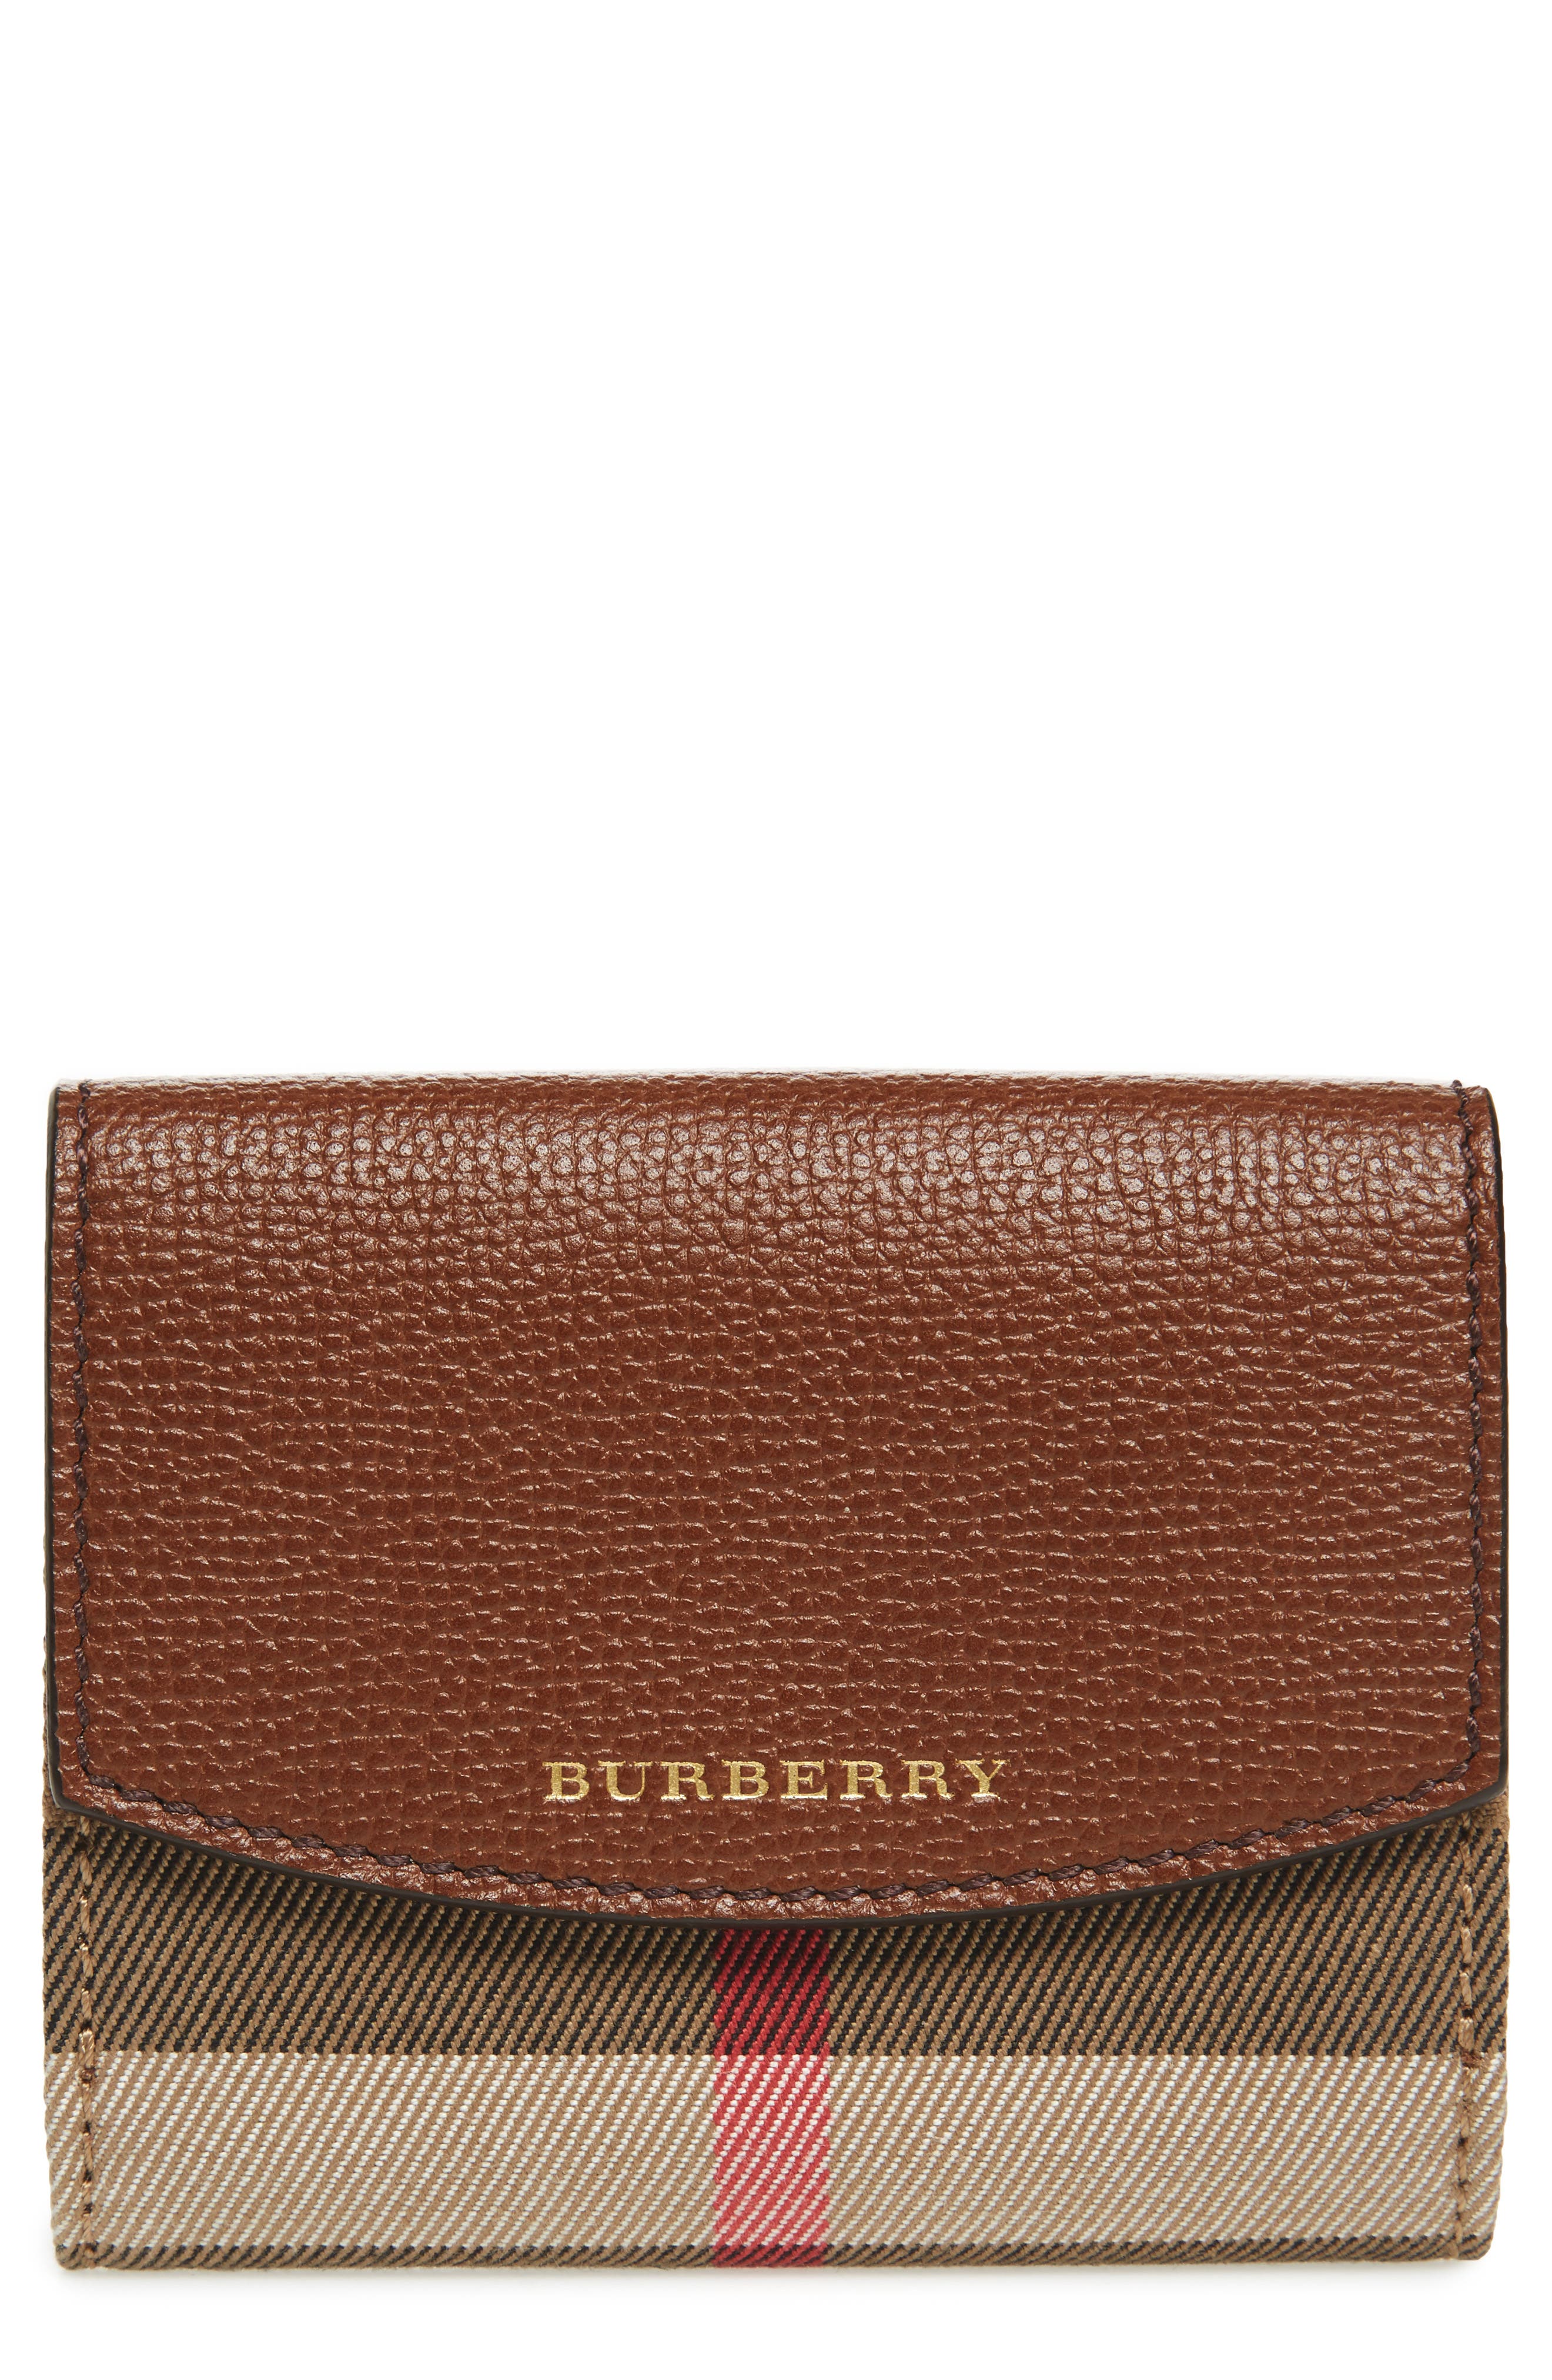 burberry luna wallet